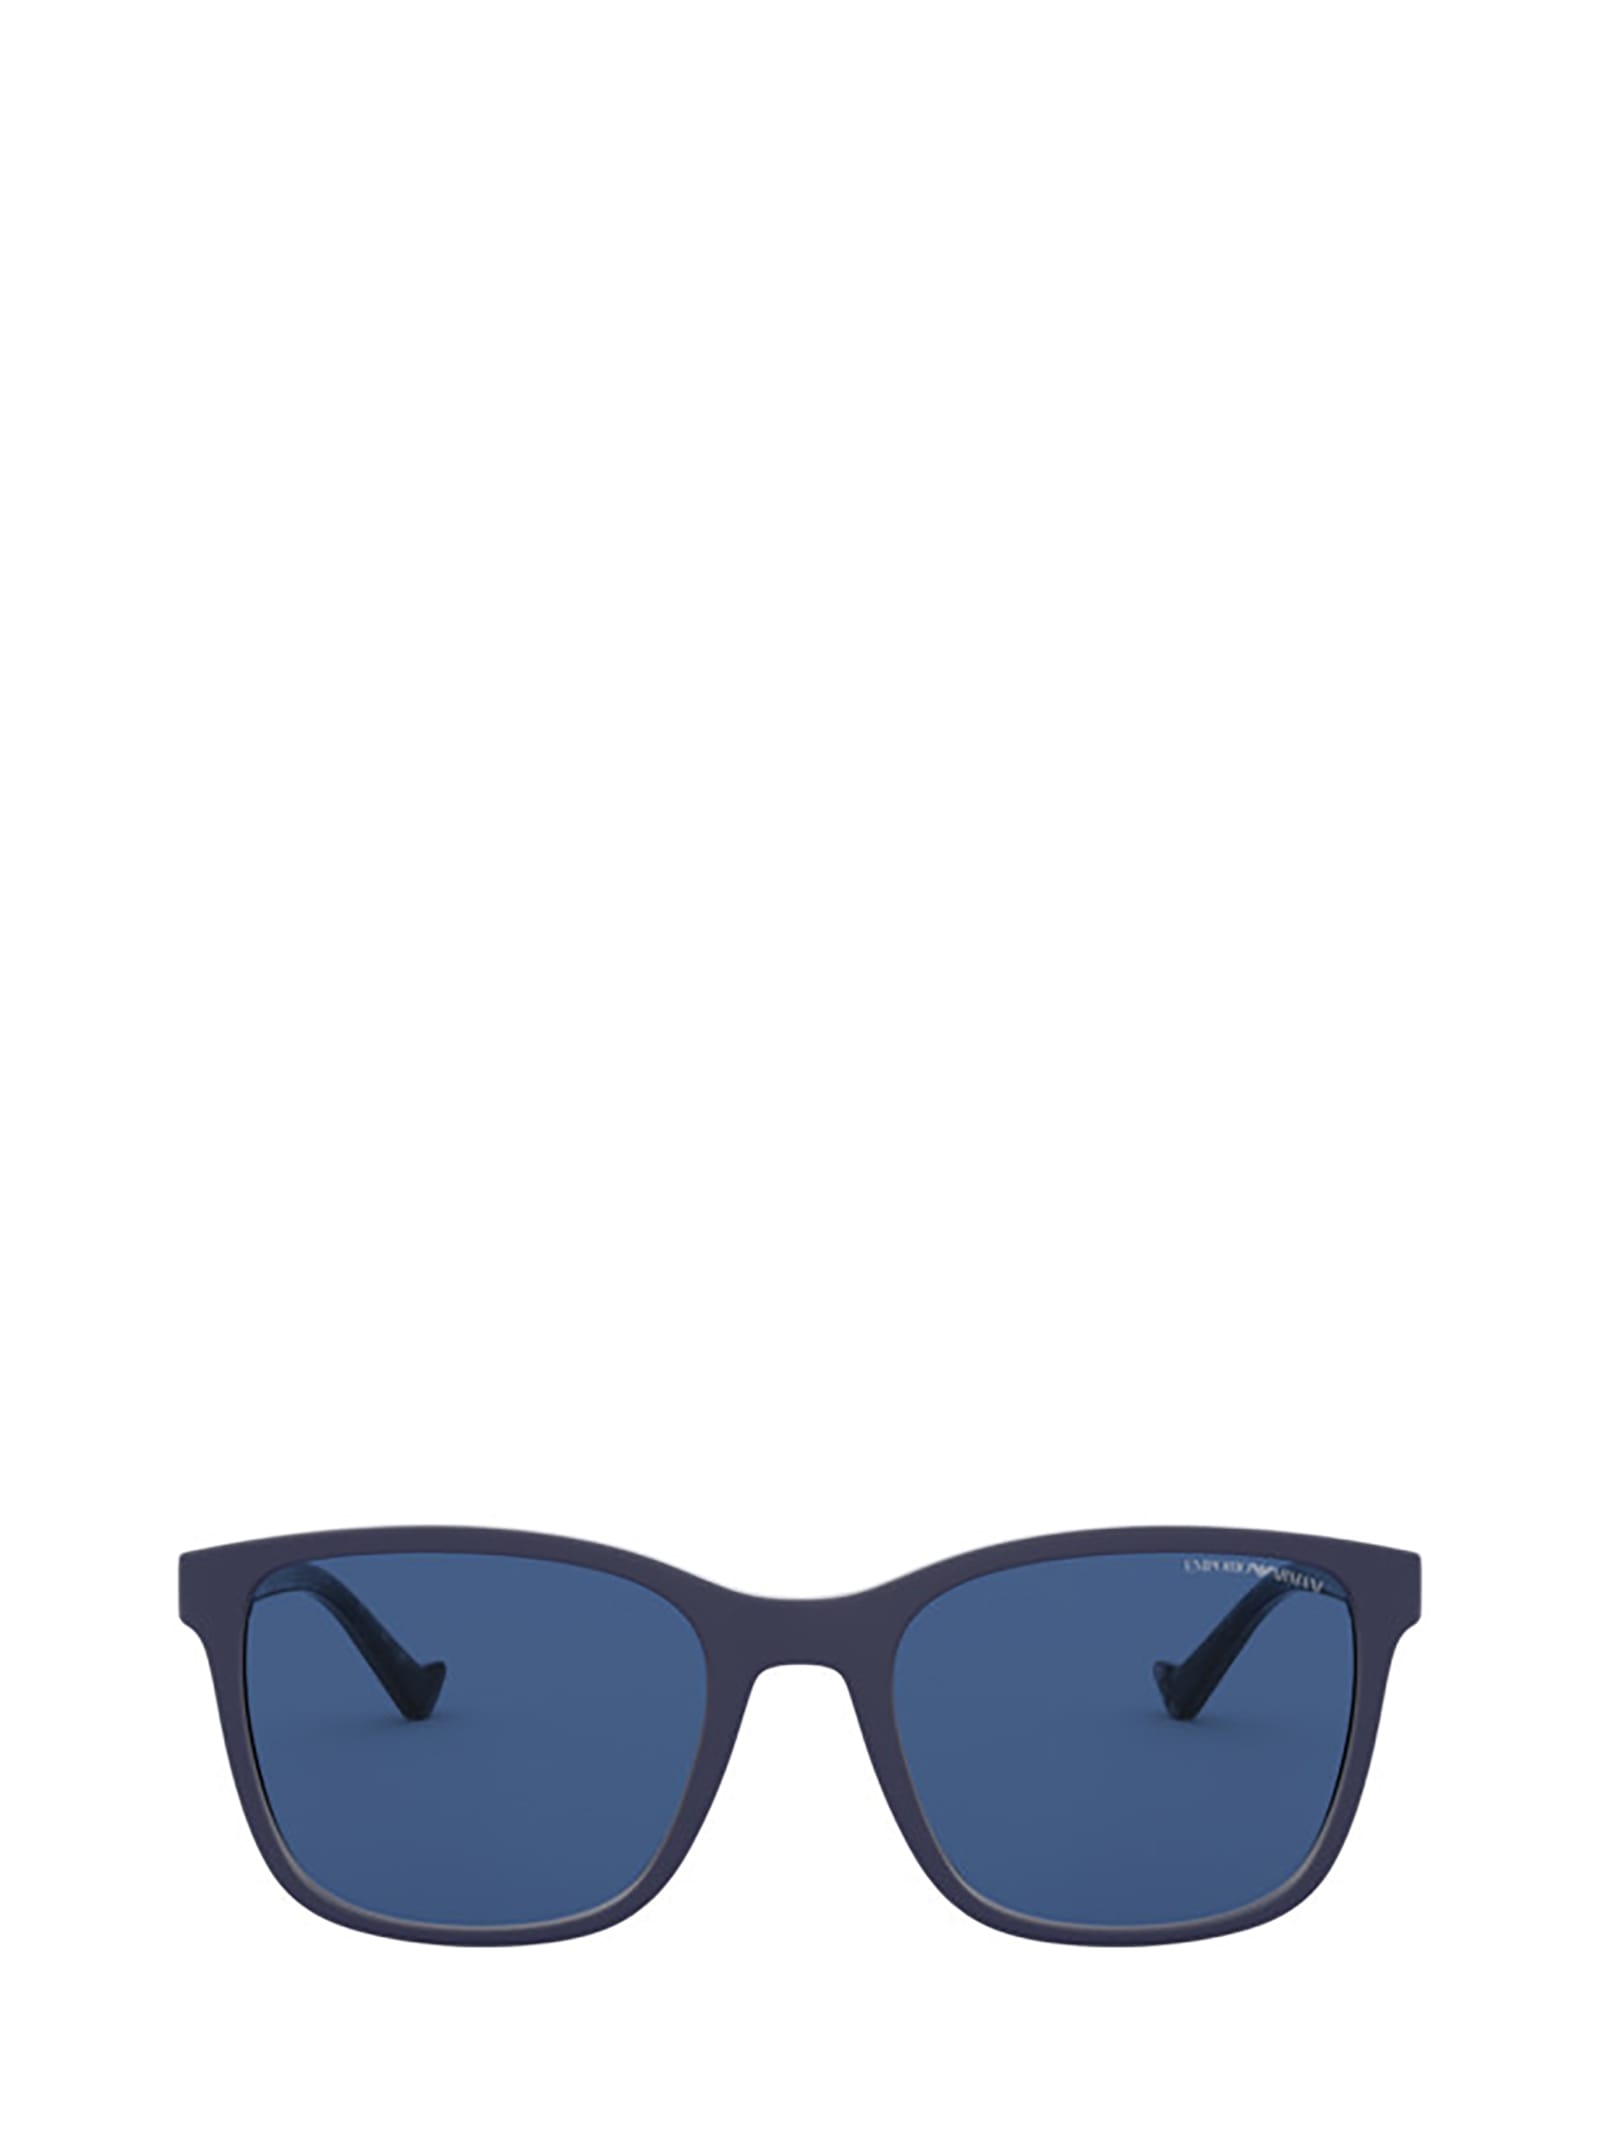 Emporio Armani Emporio Armani Ea4139 Matte Blue Sunglasses